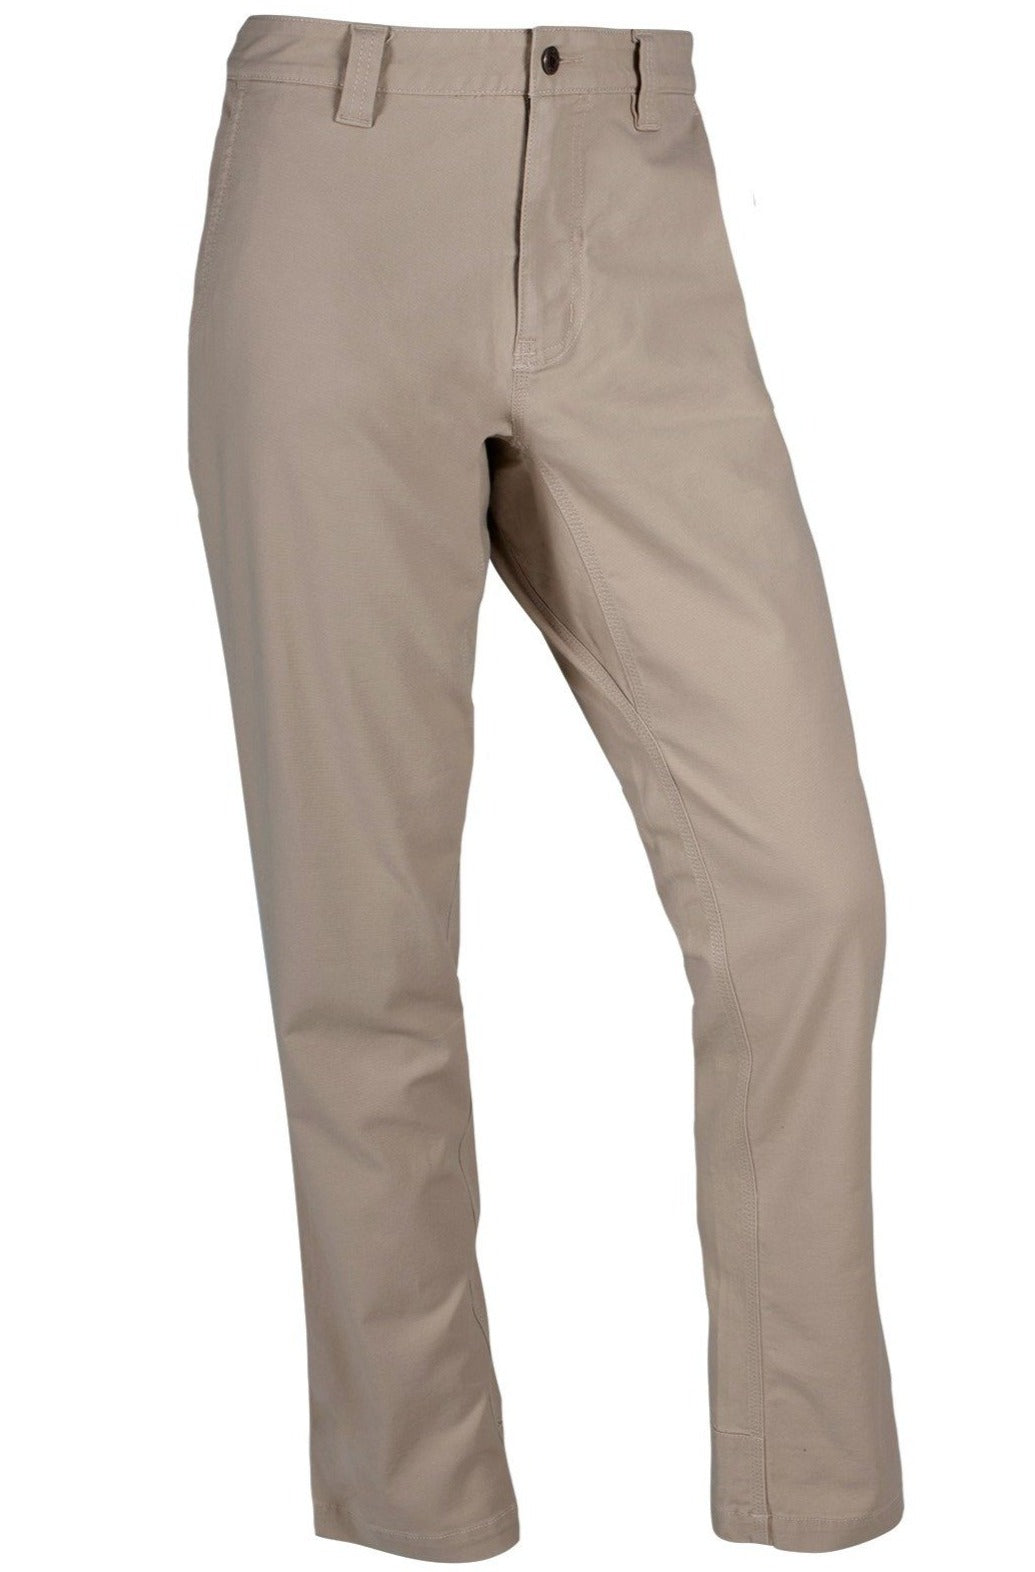 Mountain Khakis All Peak Pant Classic Fit- Retro Khaki – Pants Store